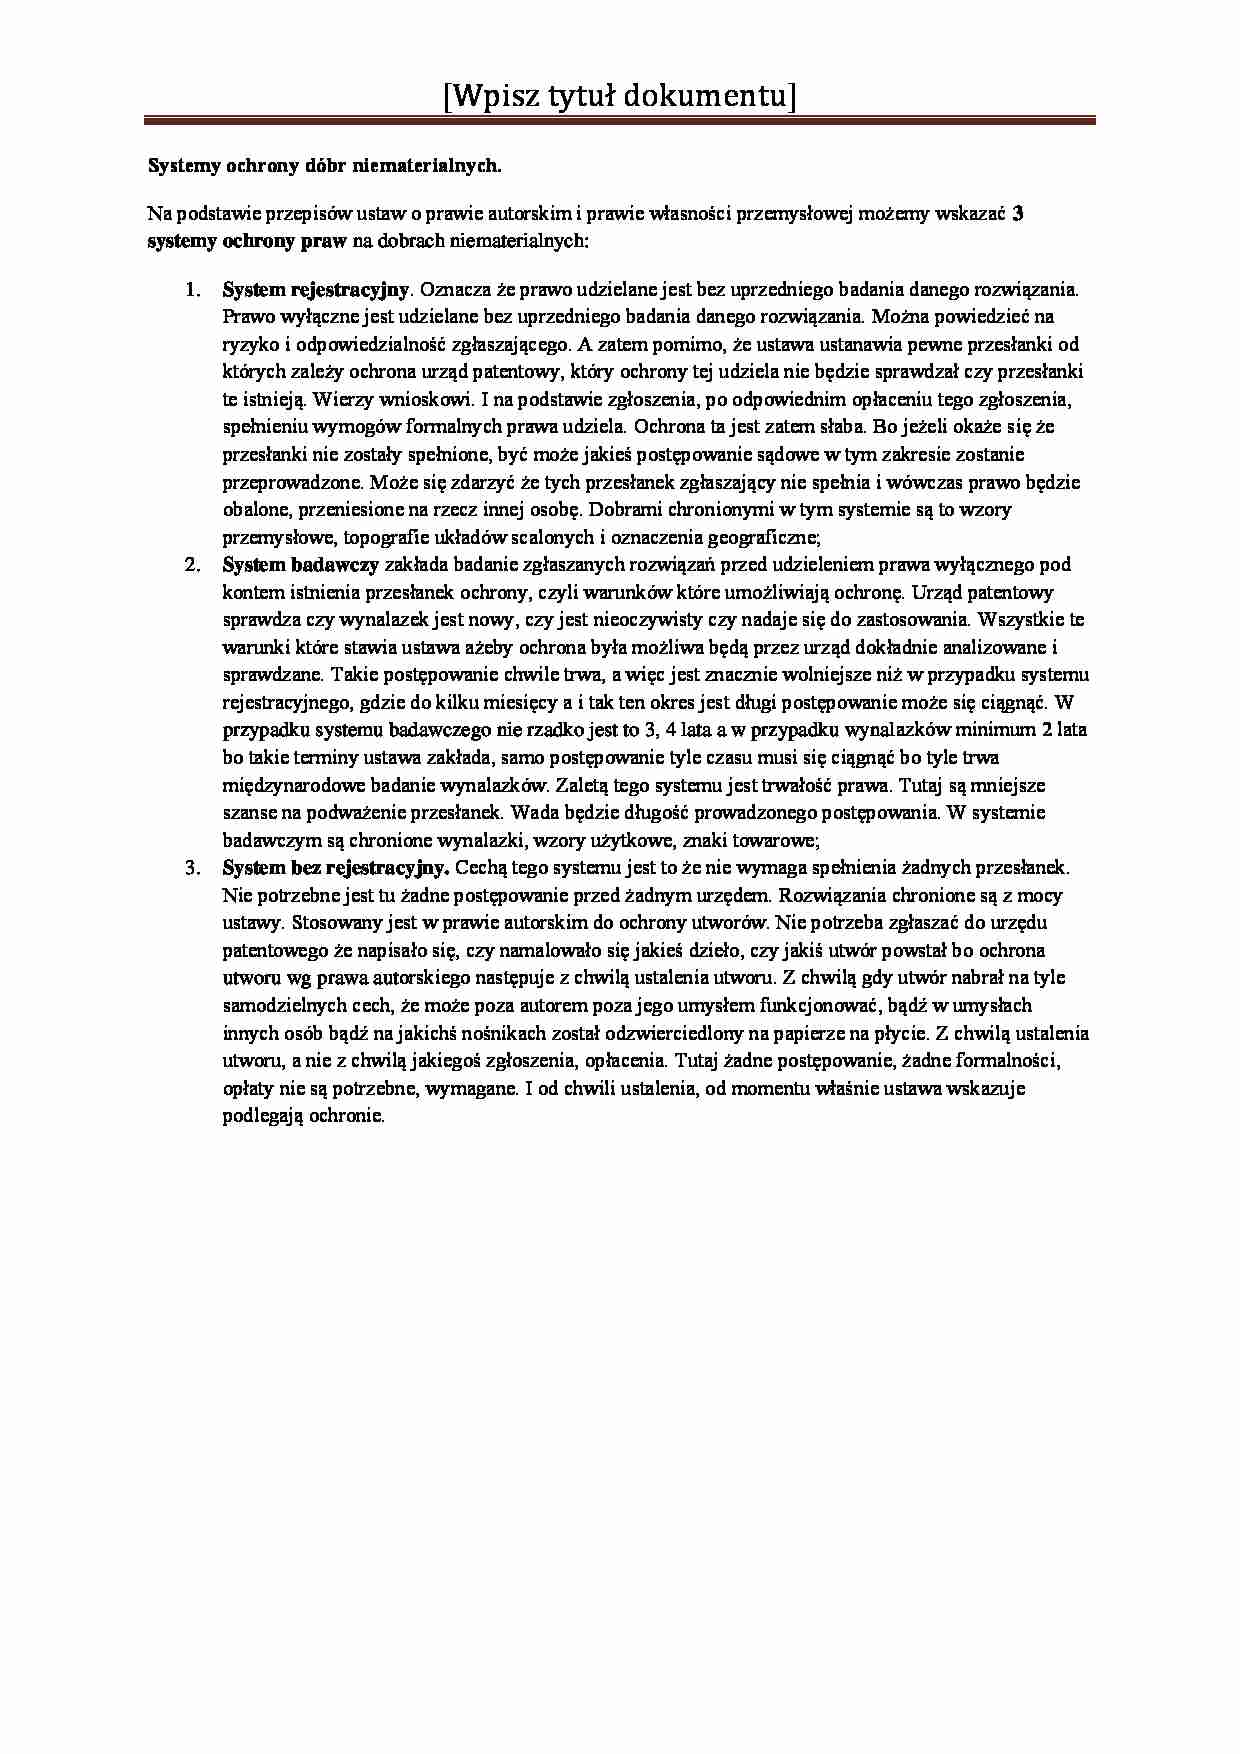 Systemy ochrony dóbr niematerialnych-opracowanie - strona 1